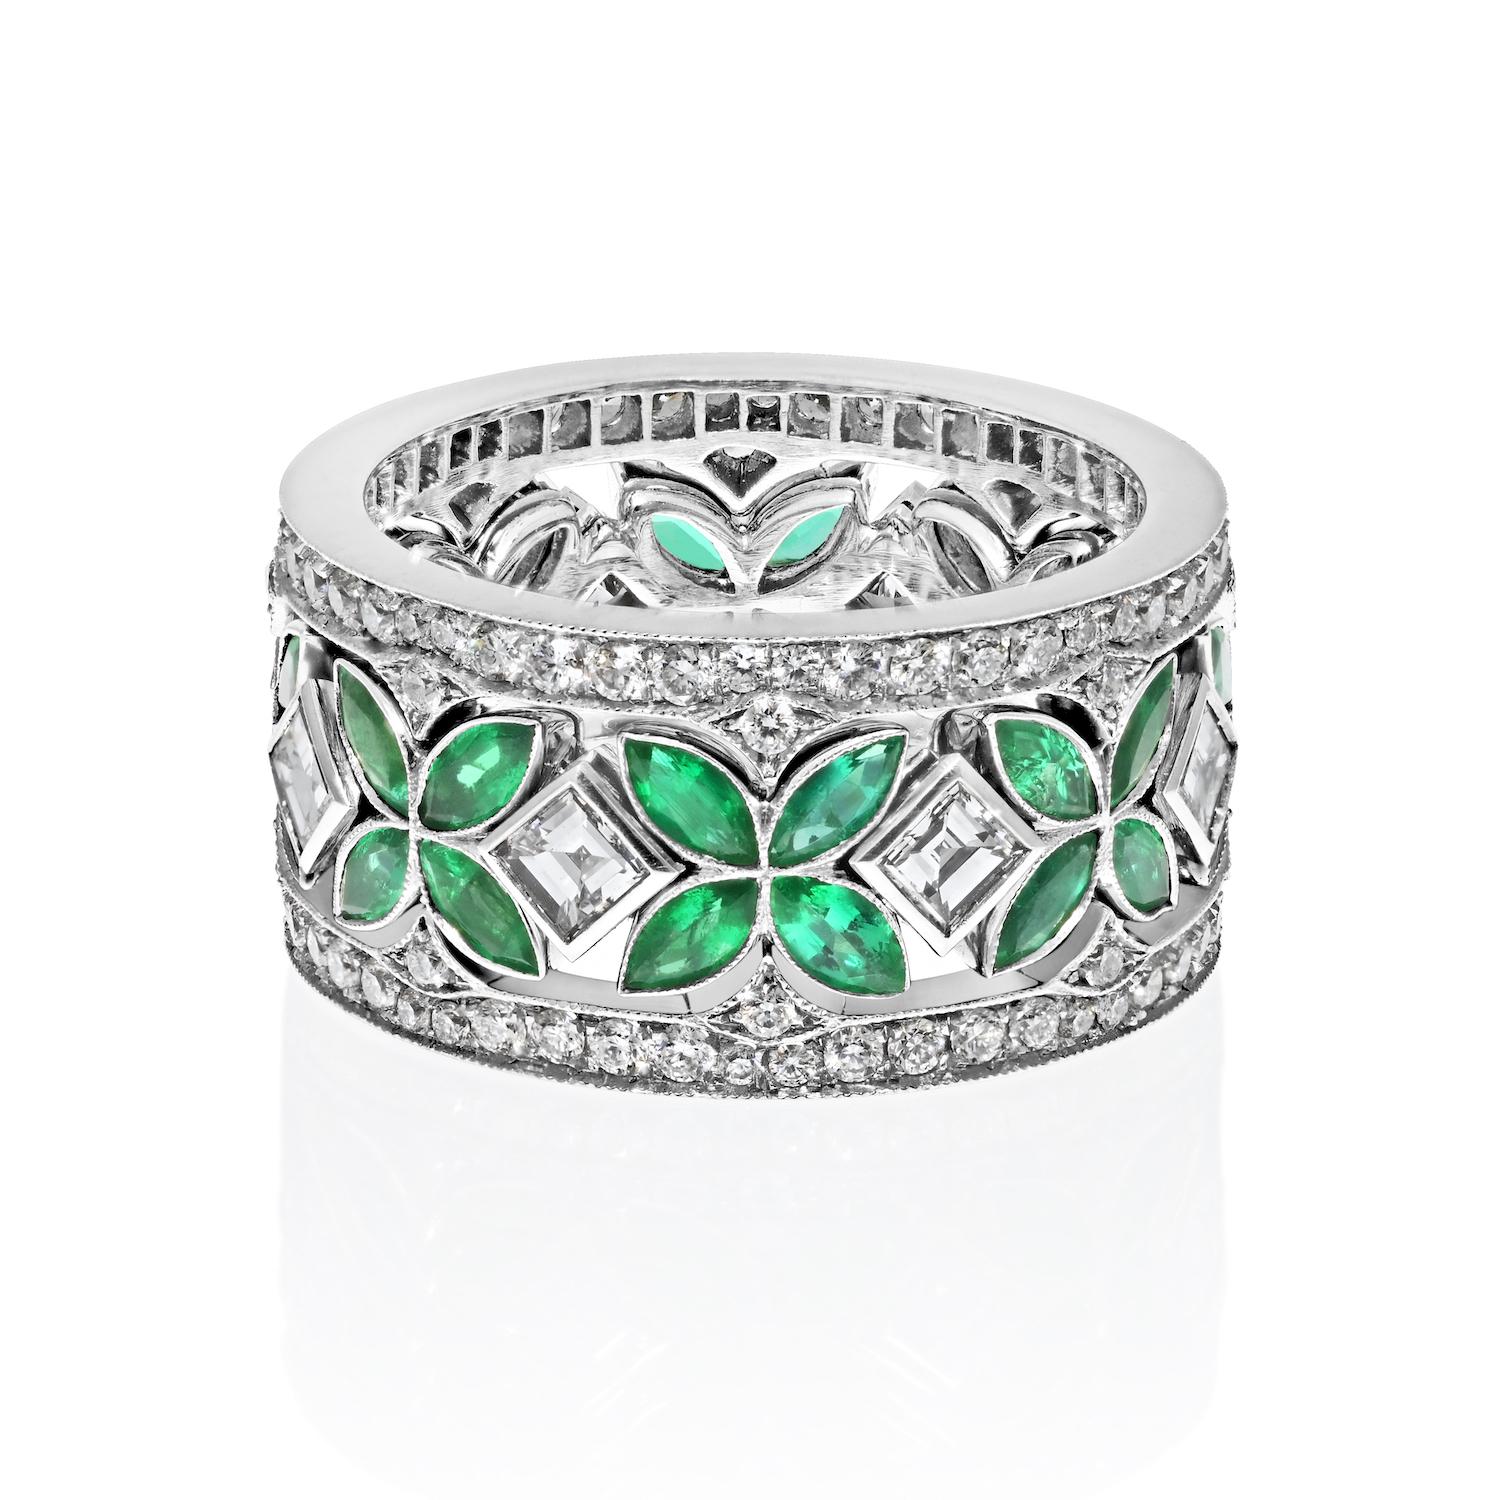 Schick und lebendig: Ihr Smaragd- und Diamant-Drei-in-Eins-Ewigkeitsring
Treten Sie ein in eine Welt der Eleganz und des Stils mit diesem bezaubernden Smaragd- und Diamantring für die Ewigkeit, einem Schmuckstück, das so vielseitig ist wie Sie